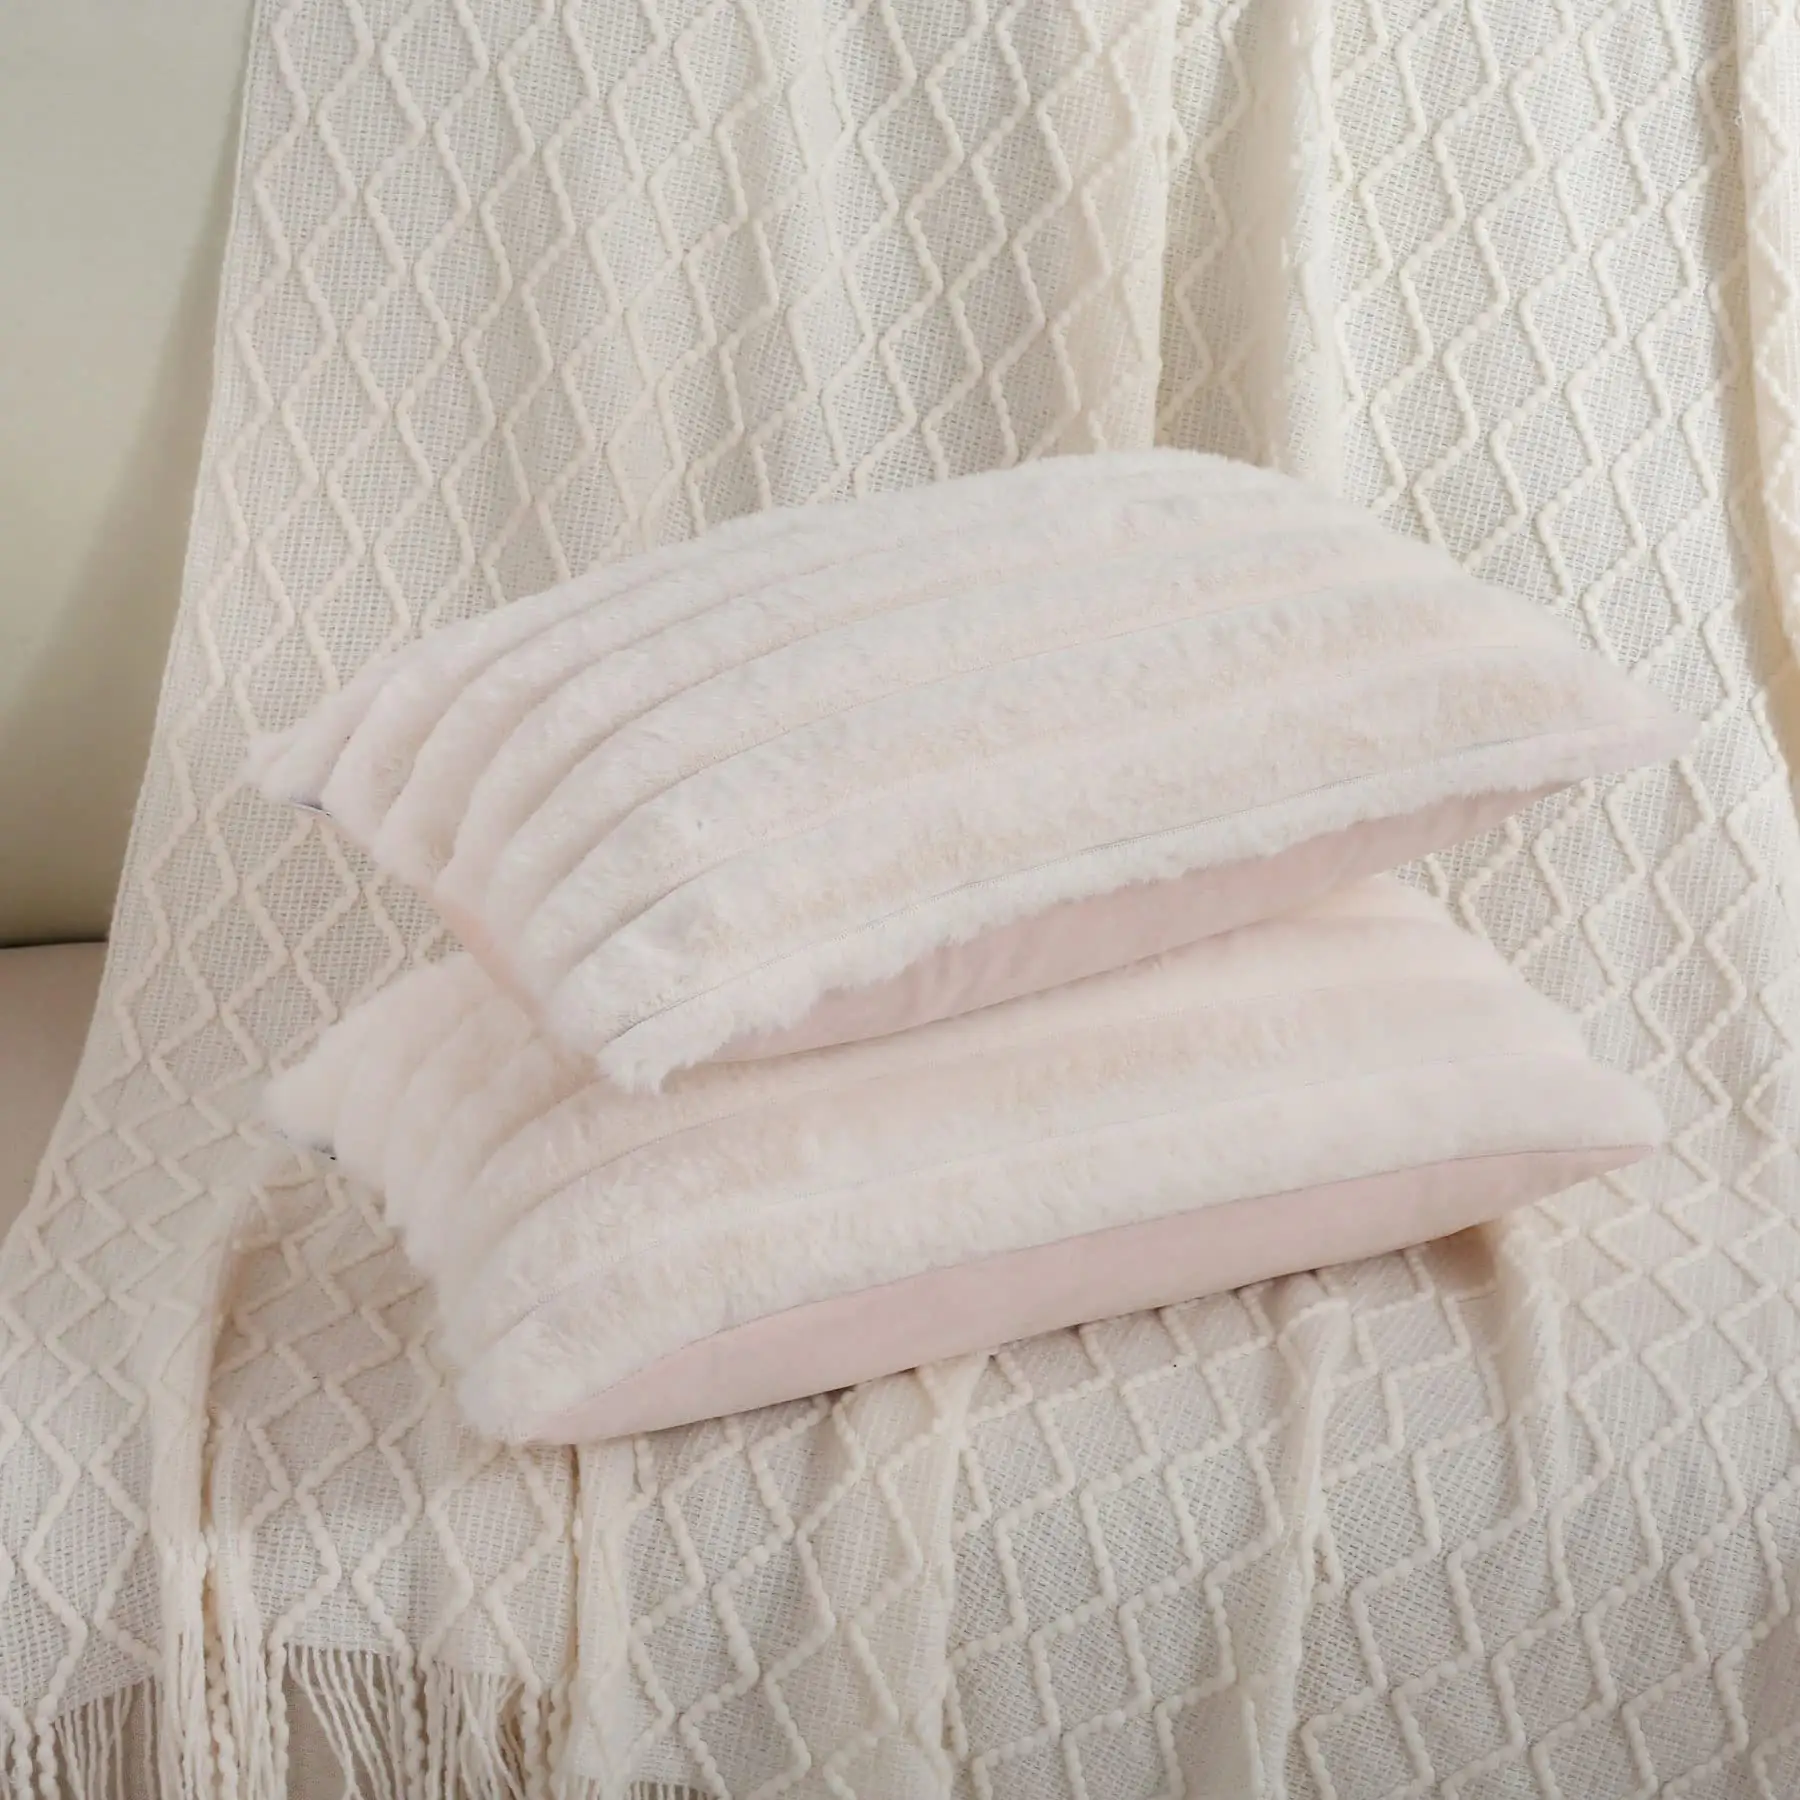 Özel çizgili dekoratif yumuşak rahat Faux tavşan kürk ve kadife yastık kılıfı 30*50cm kare yastık lüks kanepe yastığı kapakları